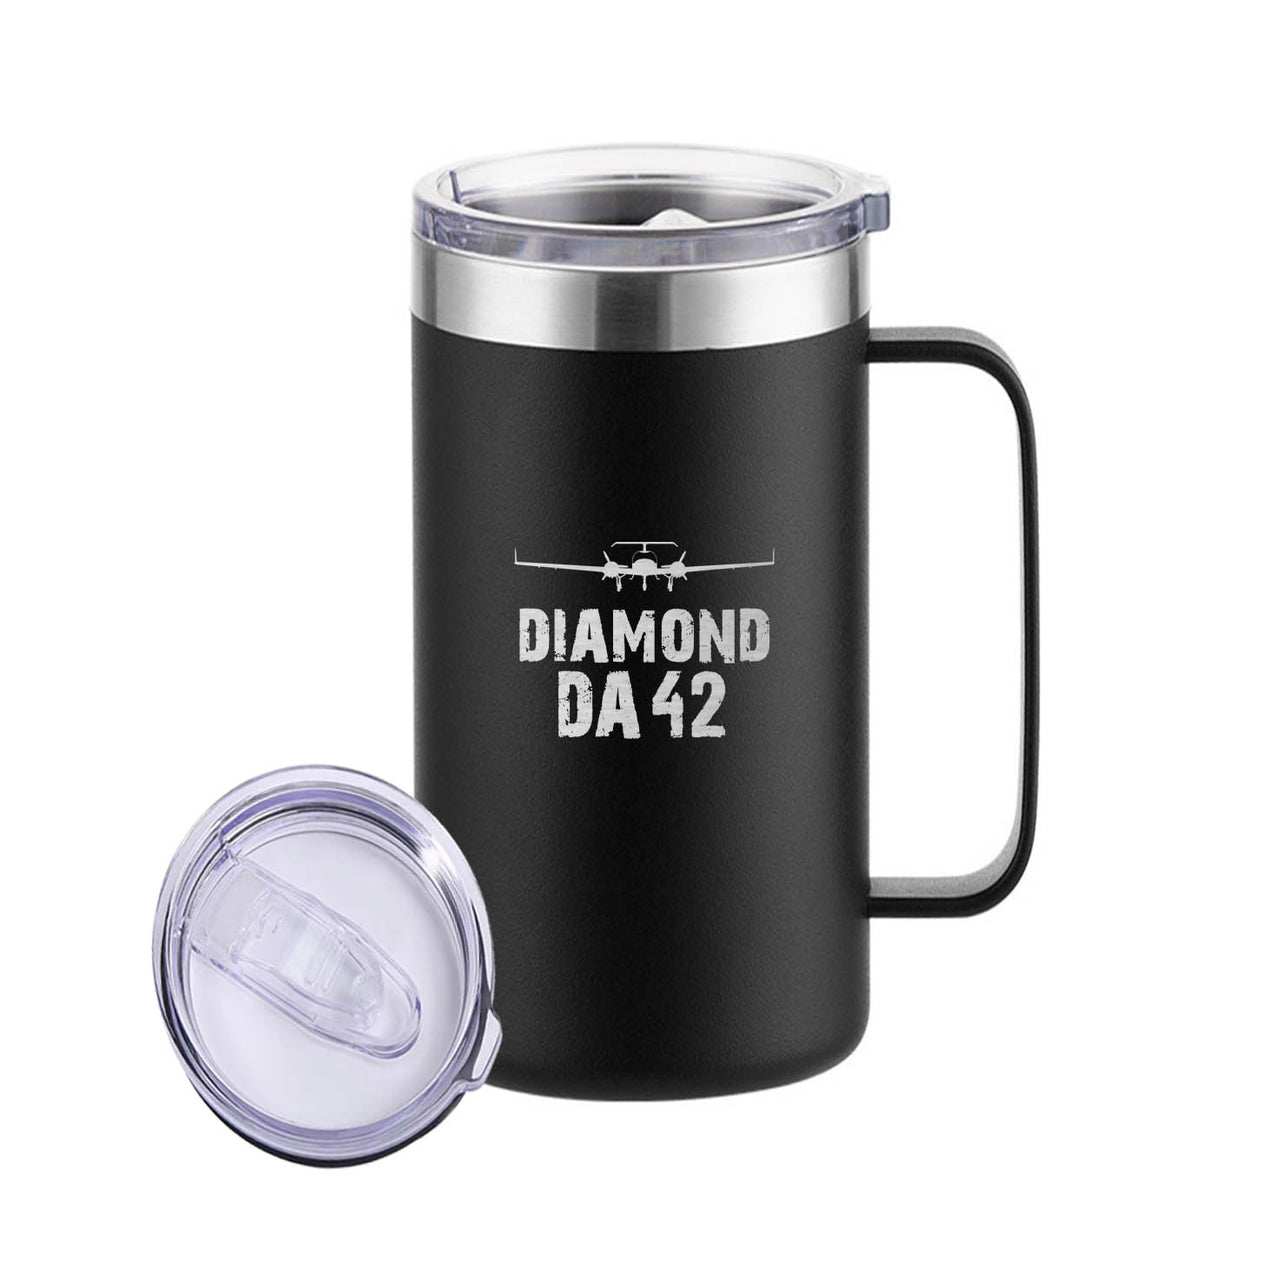 Diamond DA42 & Plane Designed Stainless Steel Beer Mugs